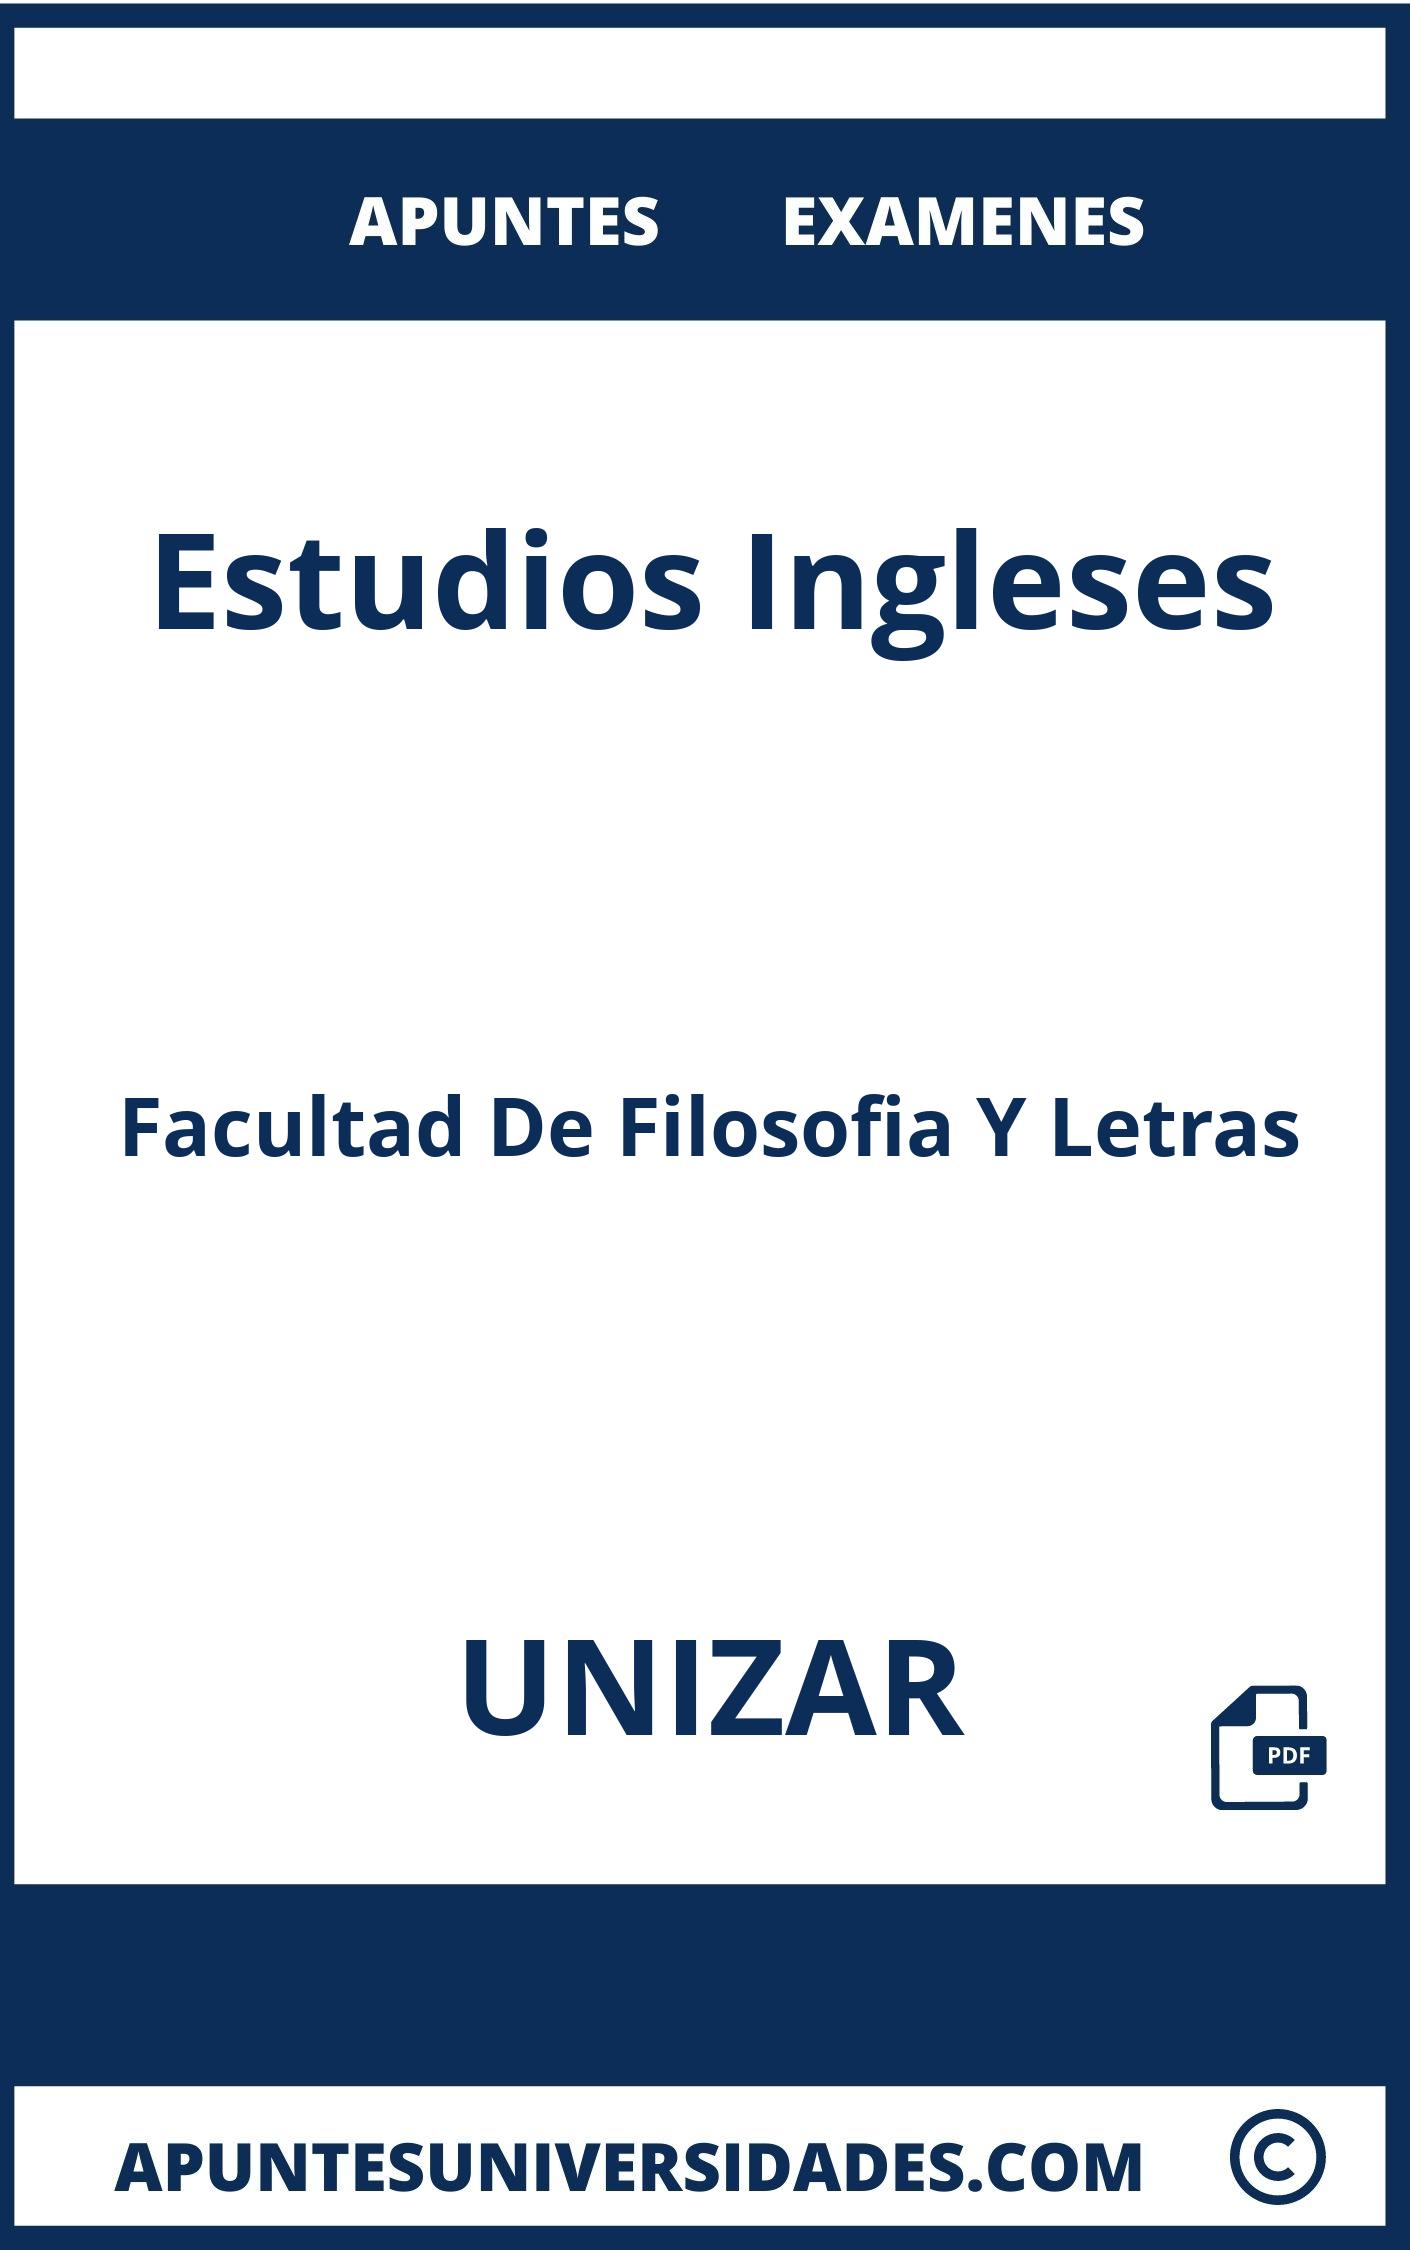 Examenes y Apuntes Estudios Ingleses UNIZAR